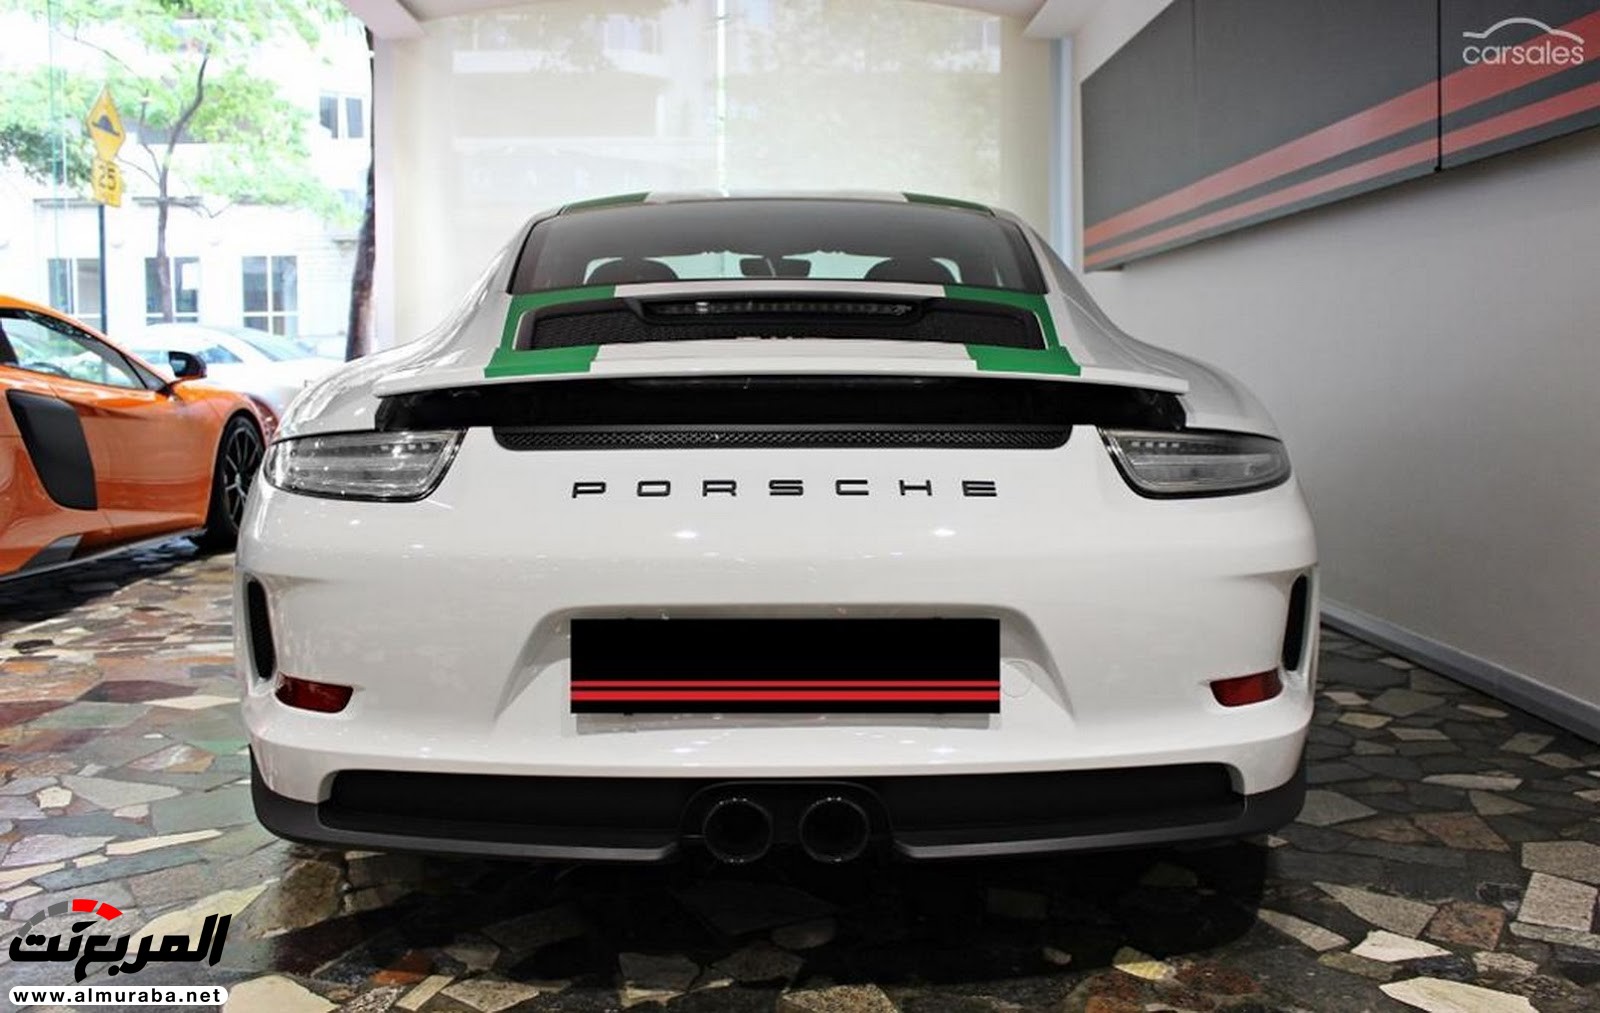 "بورش" 911 R معروضة للبيع مقابل 4.46 مليون ريال سعودي! Porsche 26